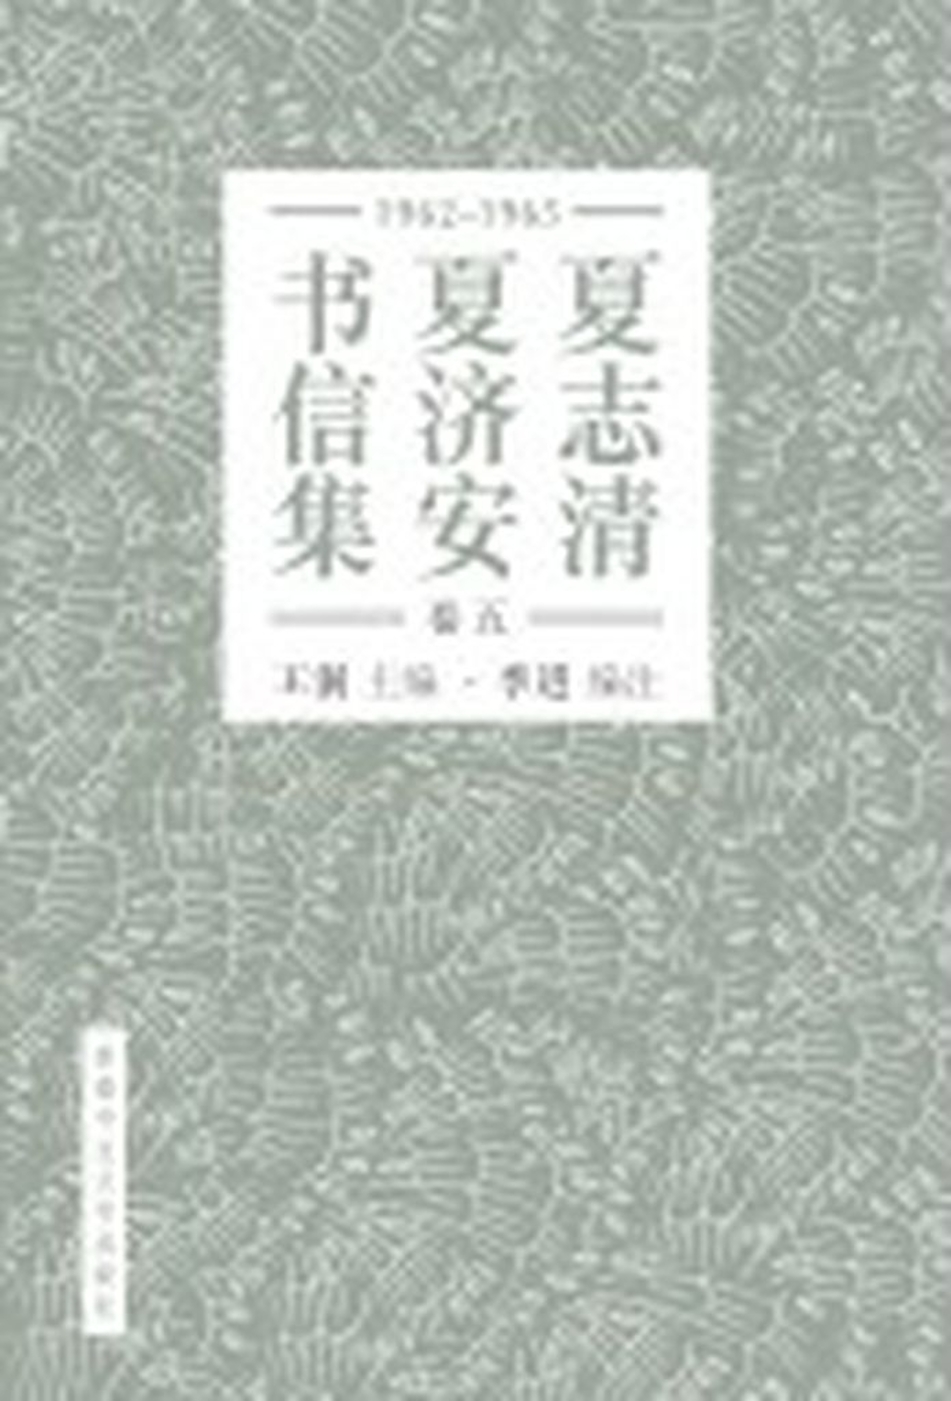 夏志清夏濟安書信集 (卷五：1965-1965) (簡體書)